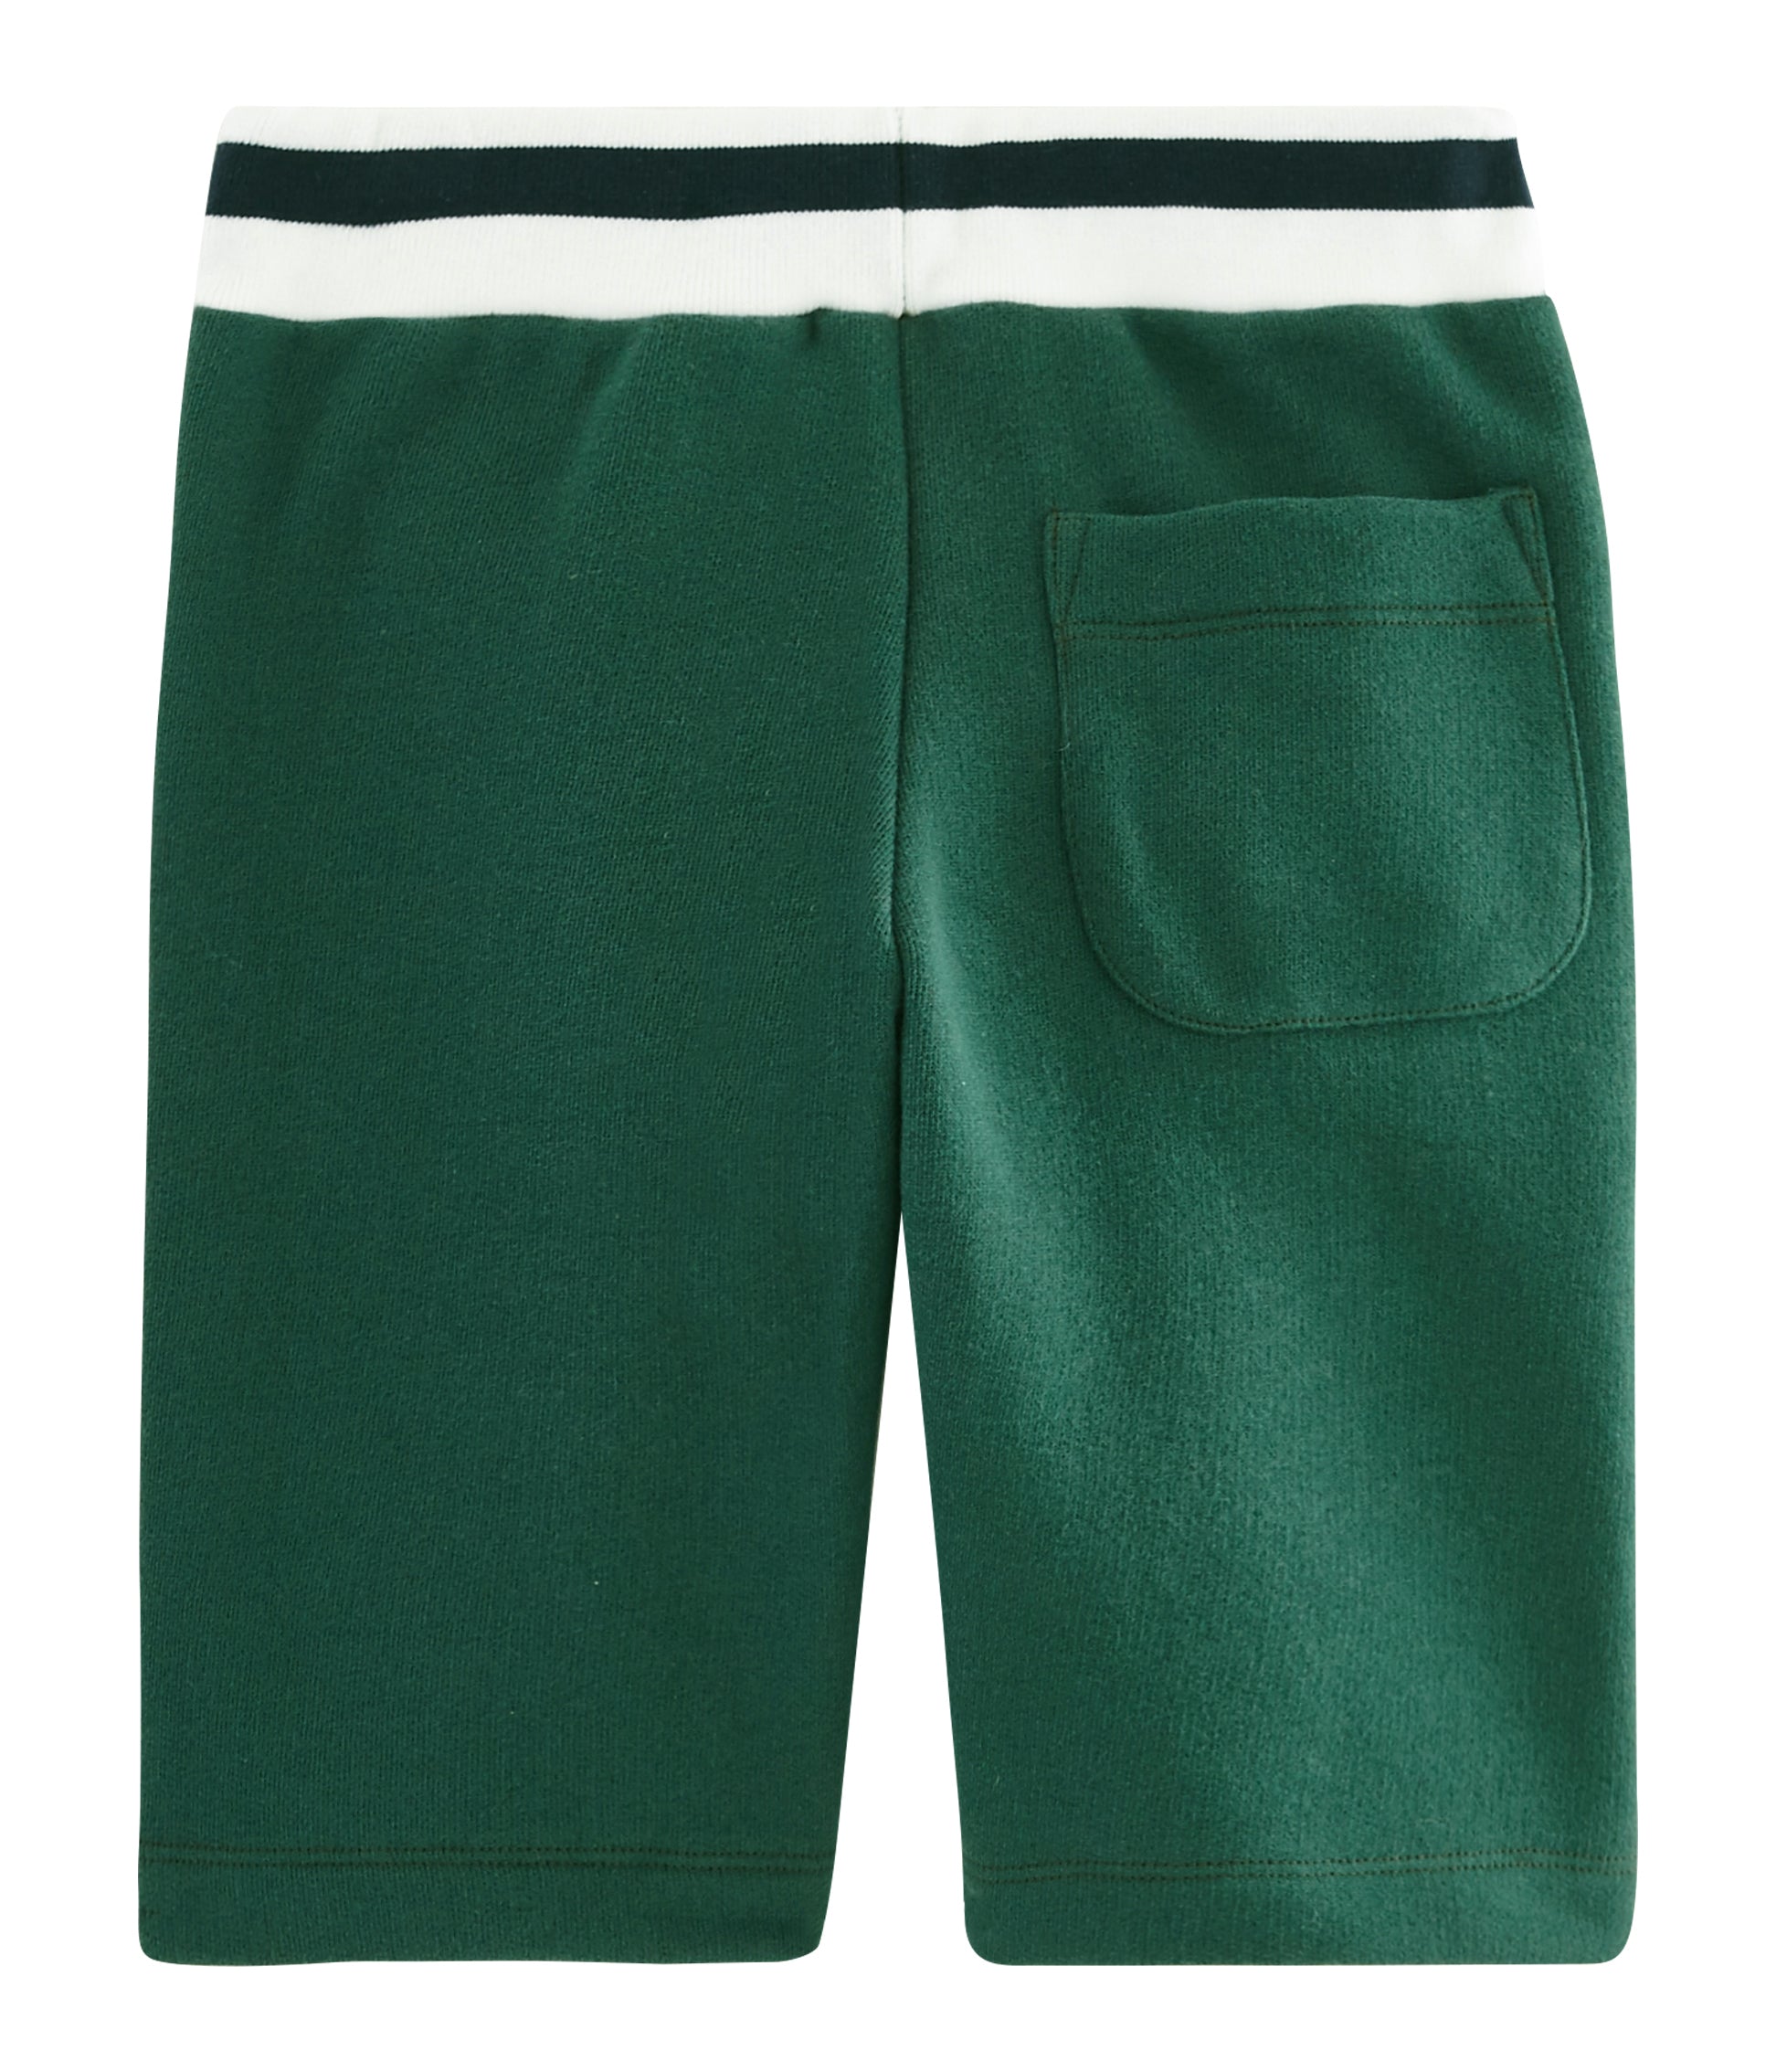 Boys Green Cotton Shorts